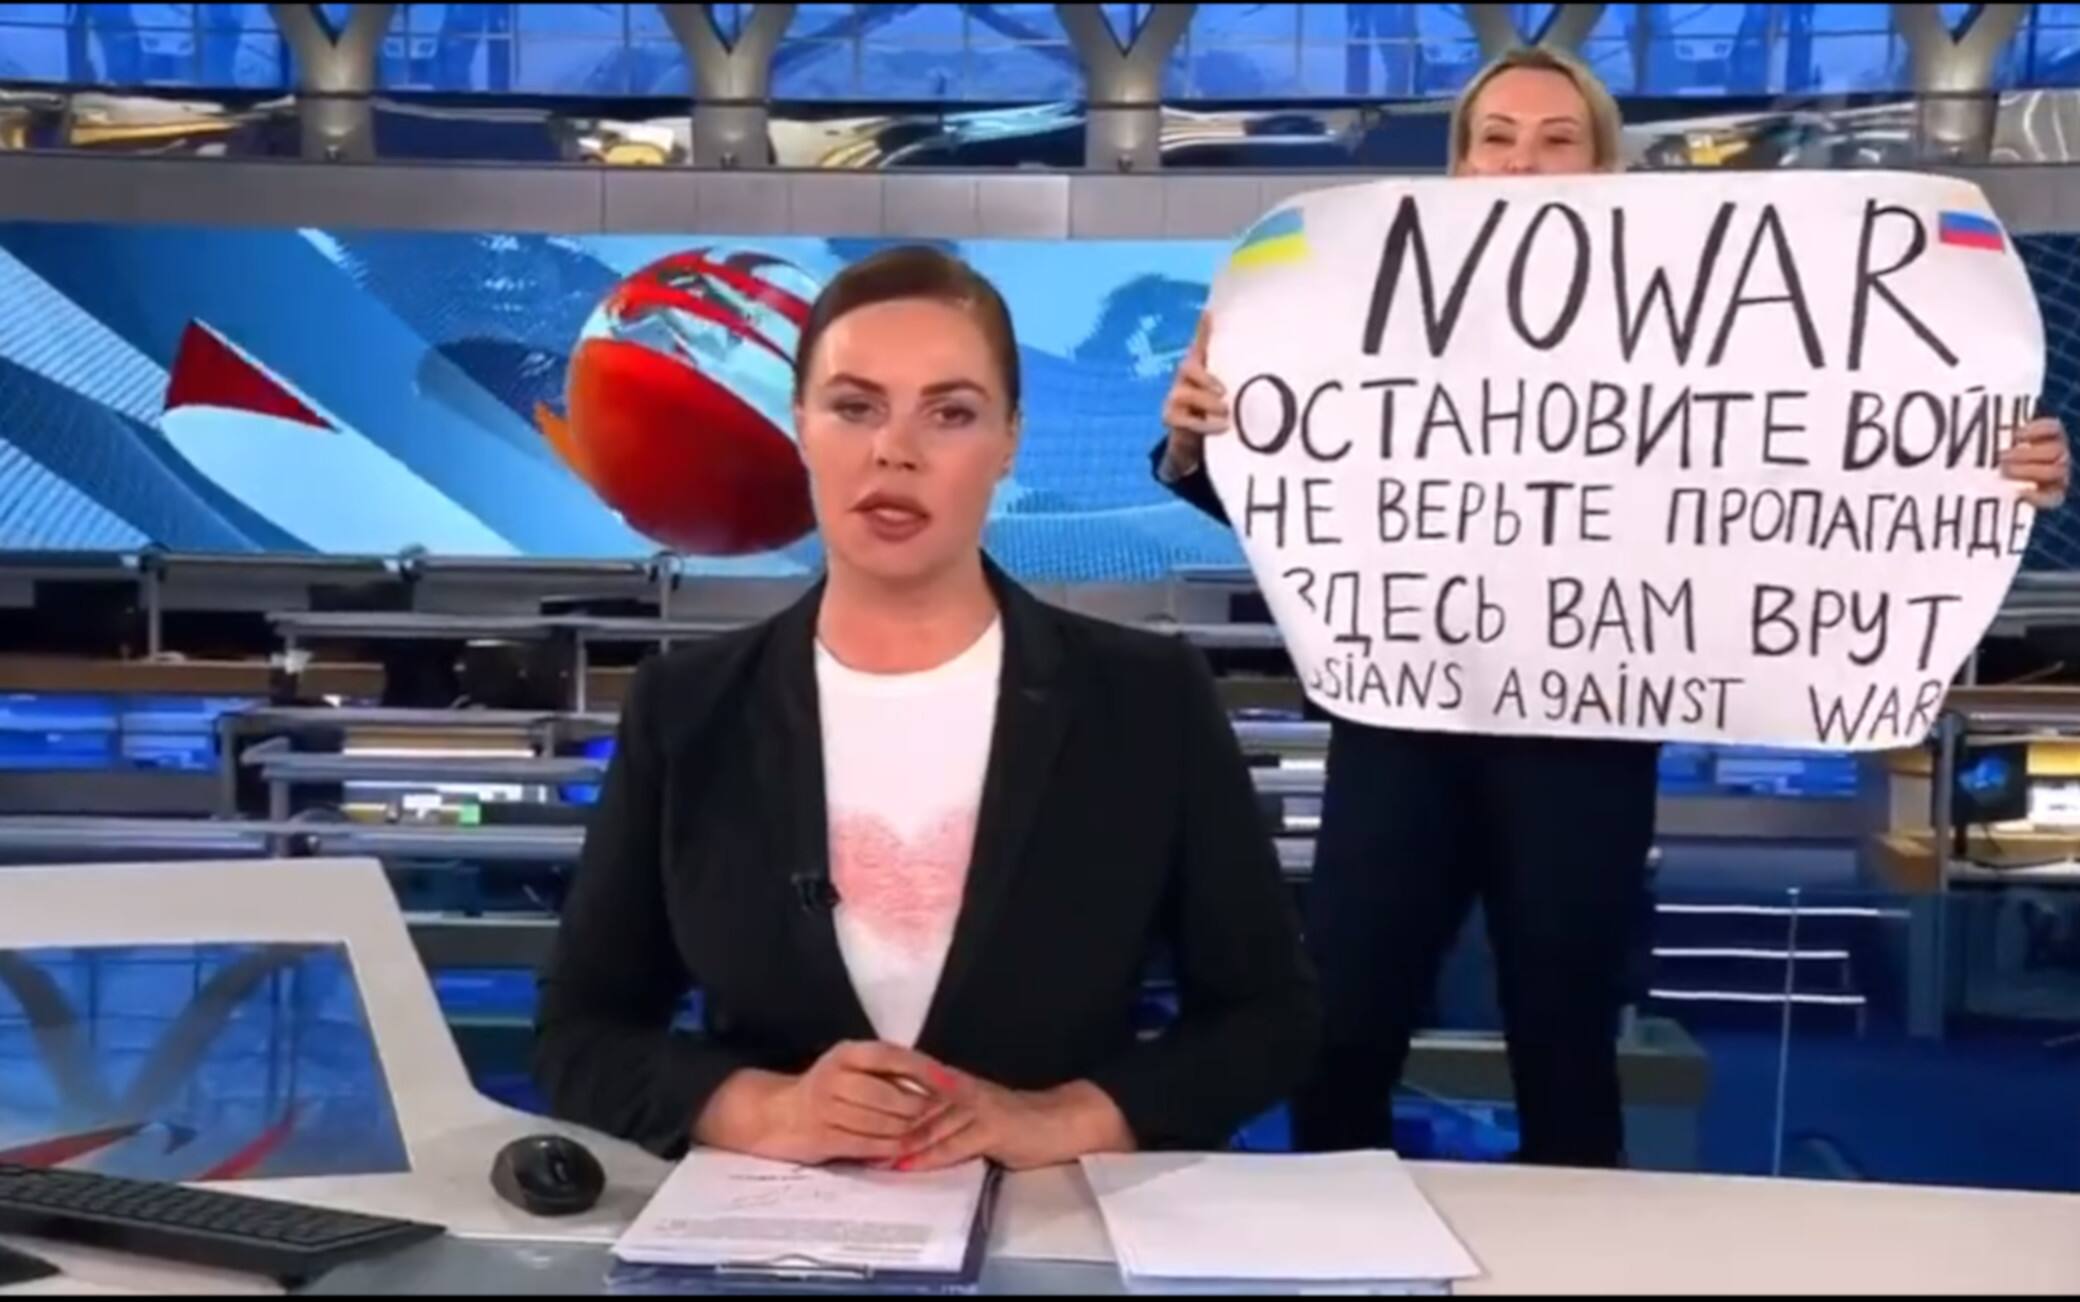 La protesta in tv della giornalista russa Ovsyannikova